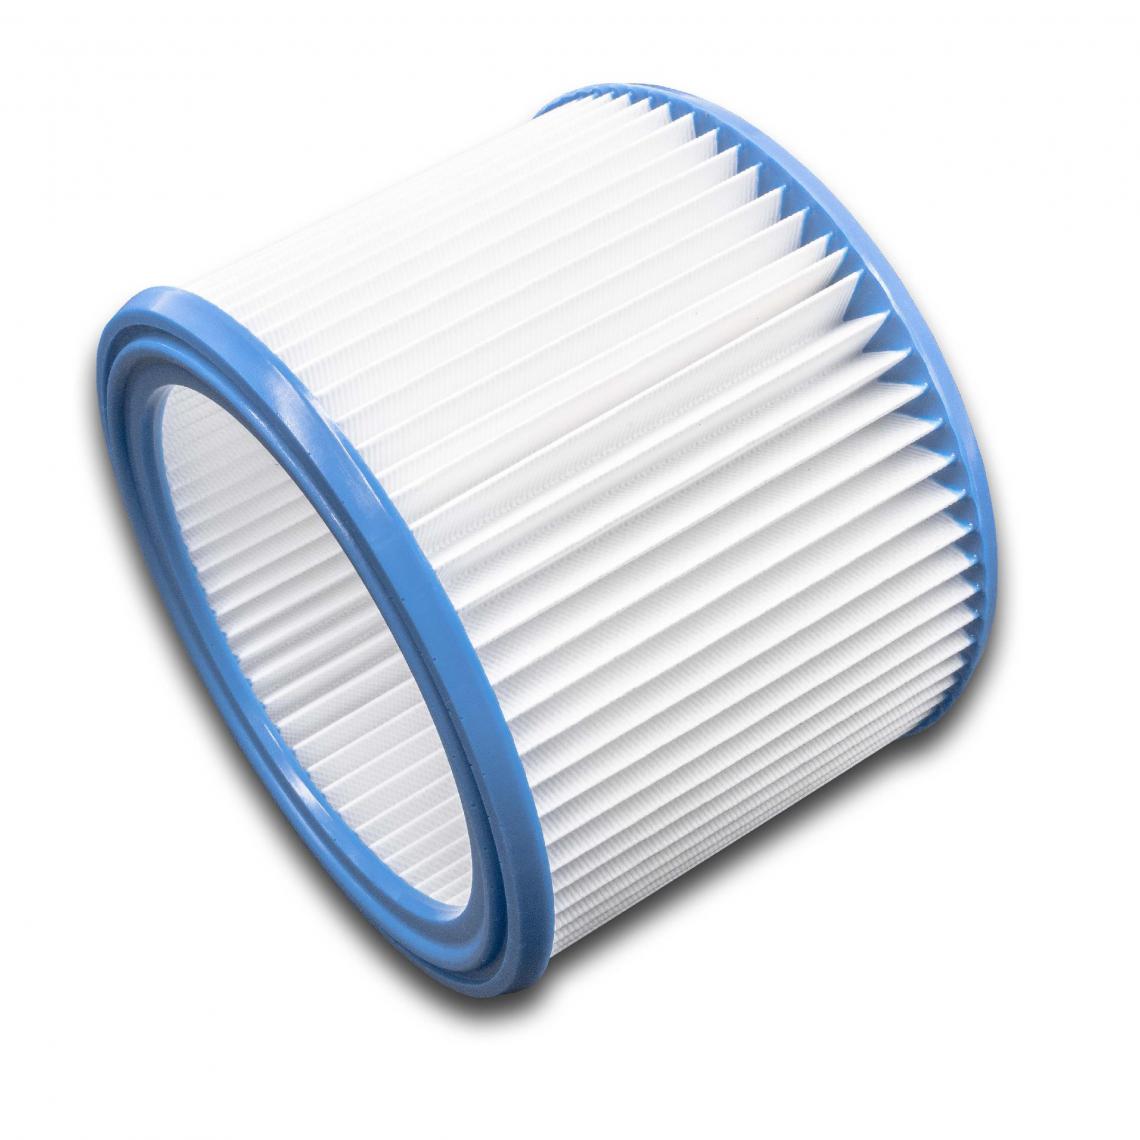 Vhbw - vhbw Set de filtres 10x Filtre plissé compatible avec Nilfisk / Alto / Wap Attix 550-21, 550-2M, 751 aspirateur à sec ou humide - Filtre à cartouche - Accessoire entretien des sols